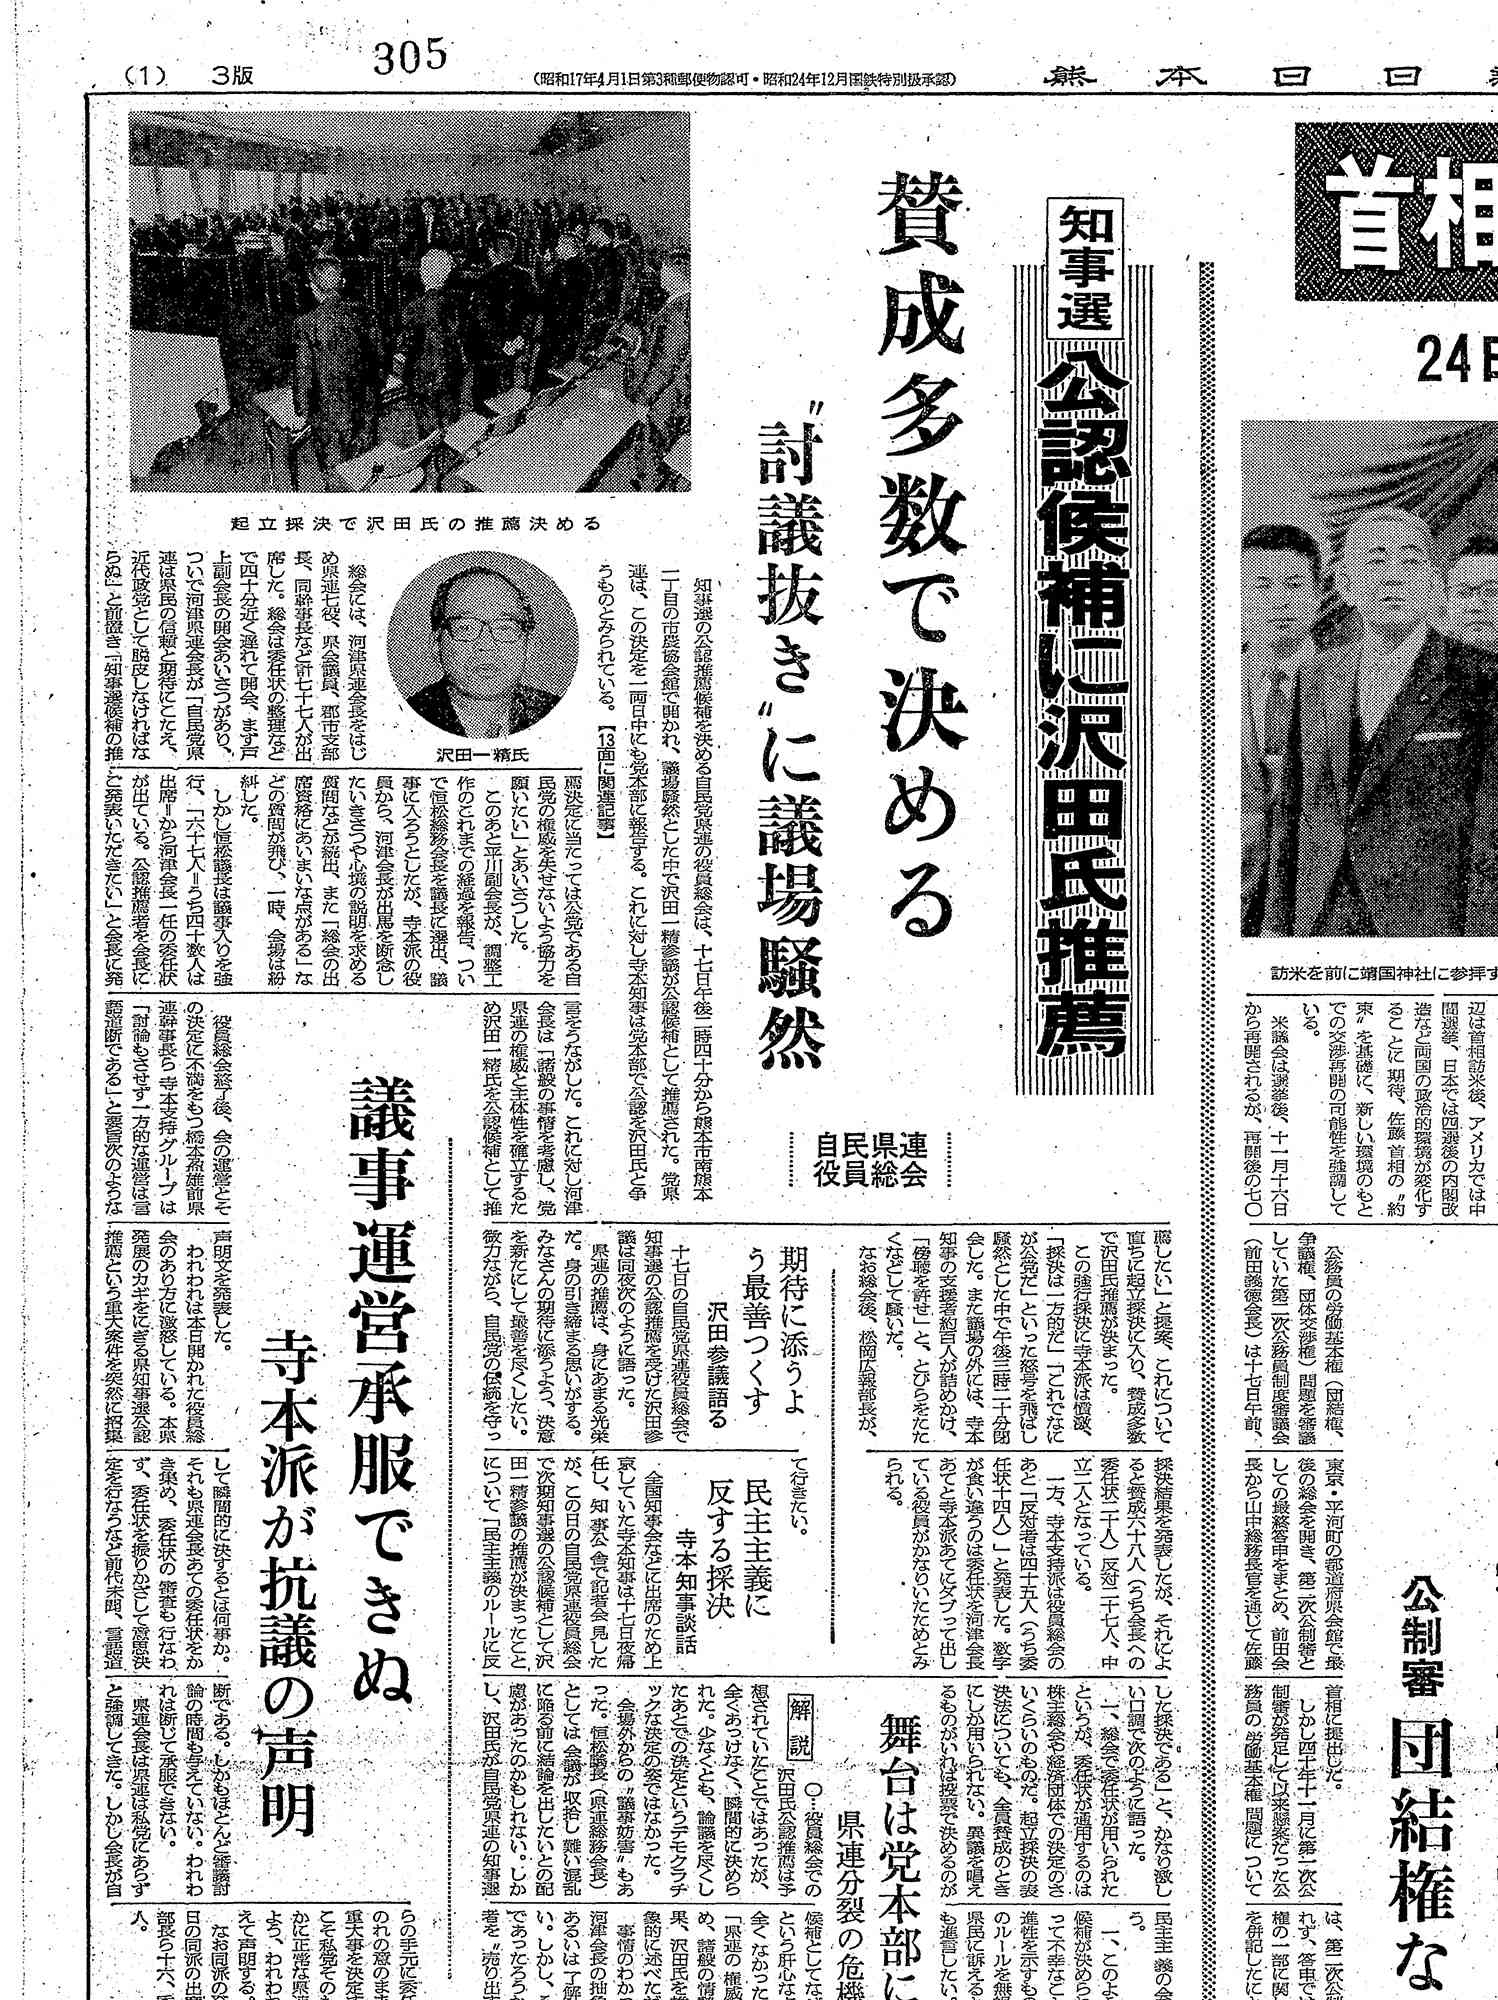 自民党県連が党公認候補に沢田氏の推薦を決めたことを伝える、1970年10月18日付の熊日